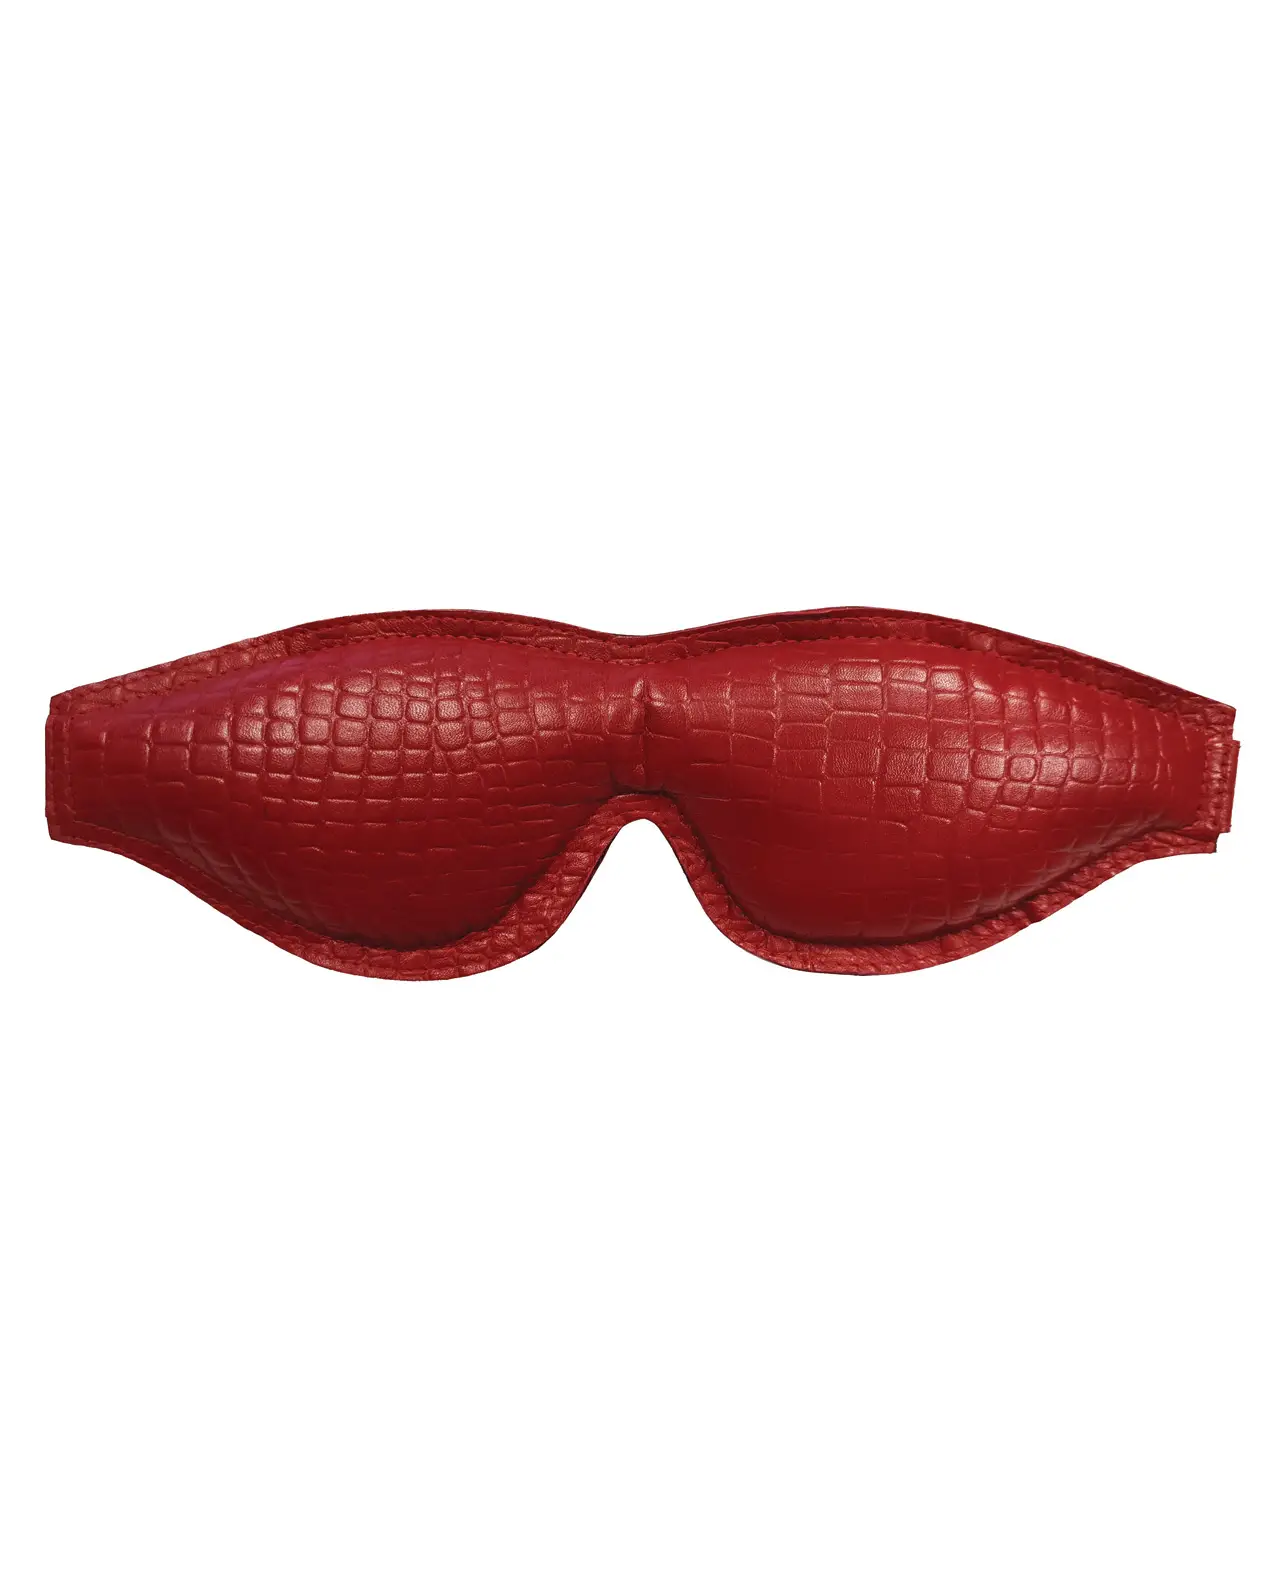 Rouge Large Padded Leather Blindfold – Burgundy